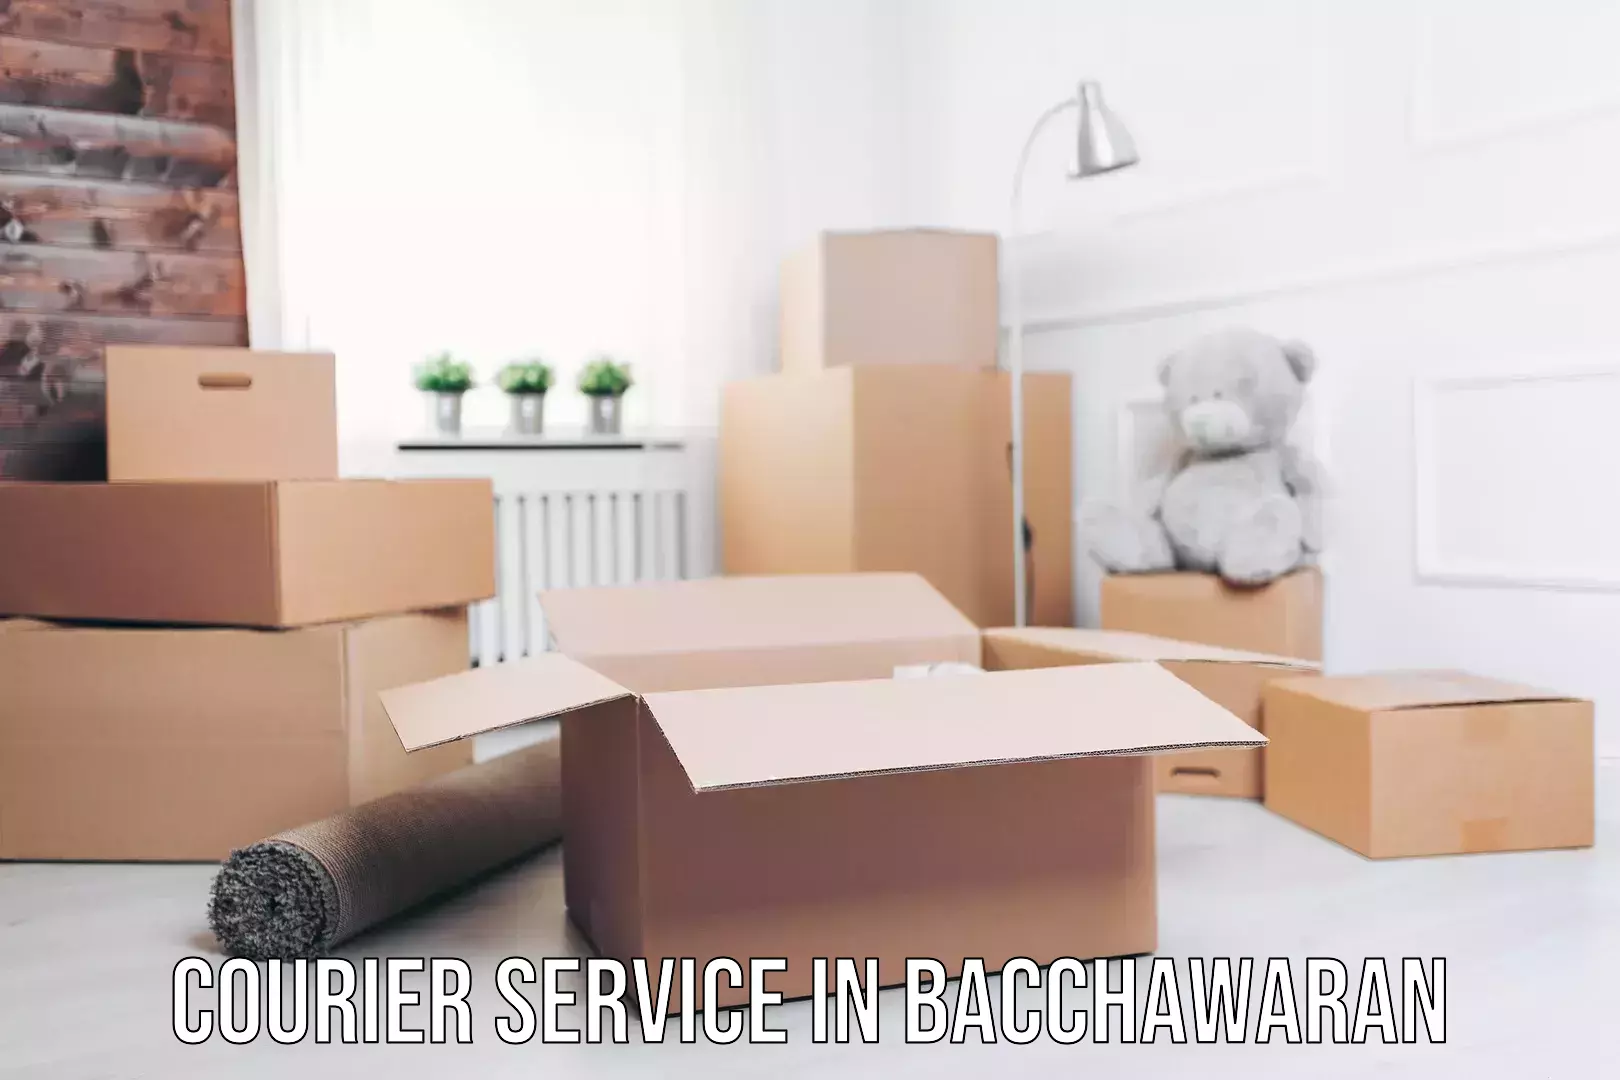 Seamless shipping service in Bacchawaran